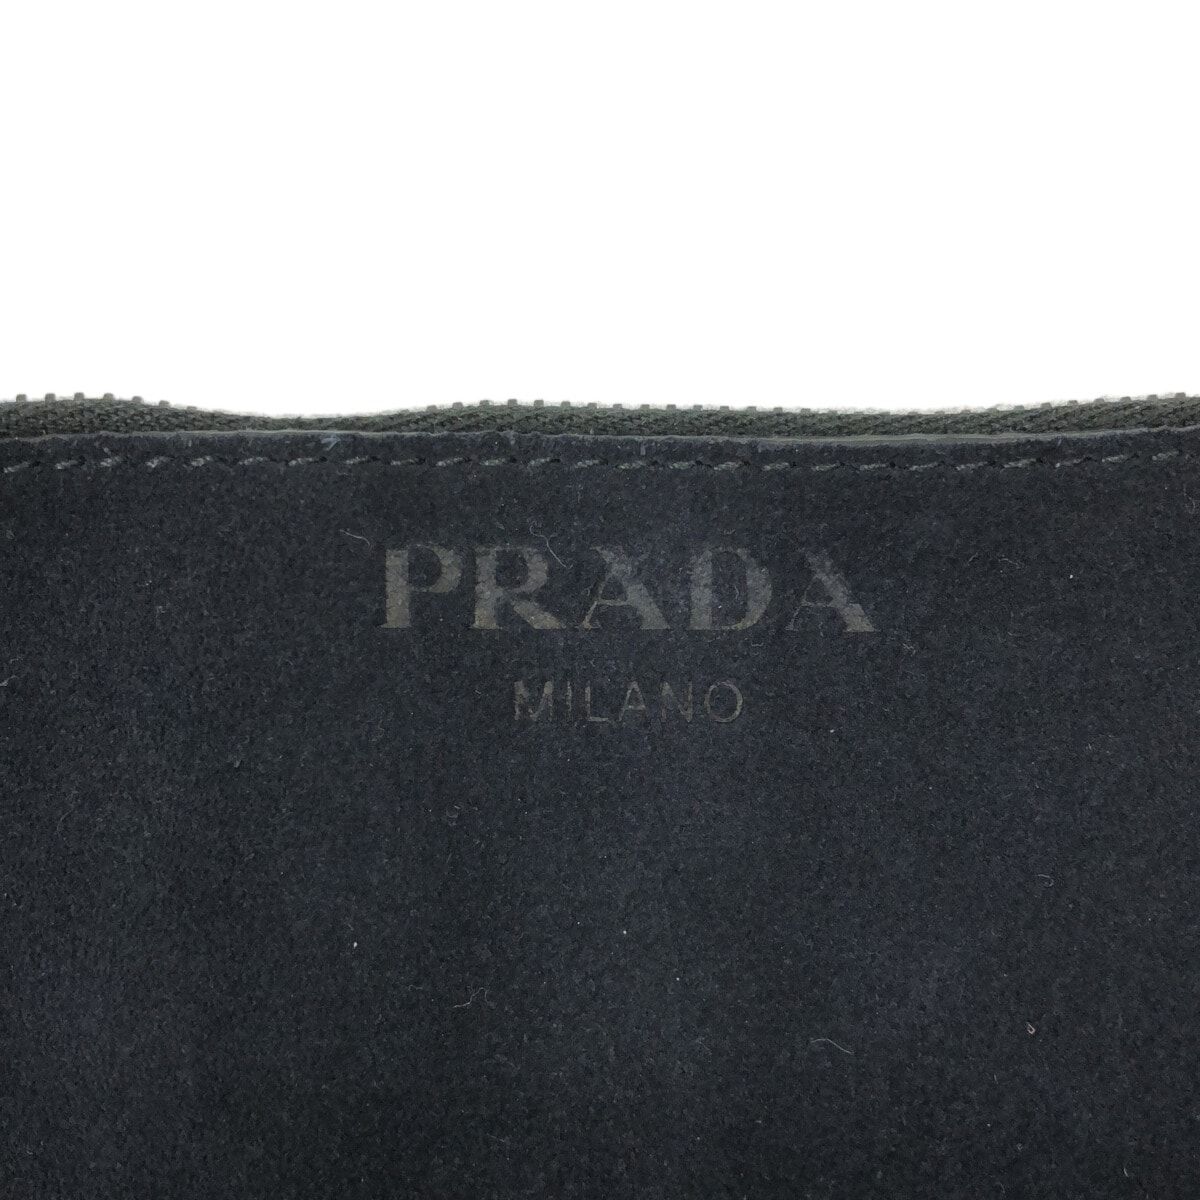 PRADA(プラダ) トートバッグ - 2VG087 黒 スエード - メルカリ